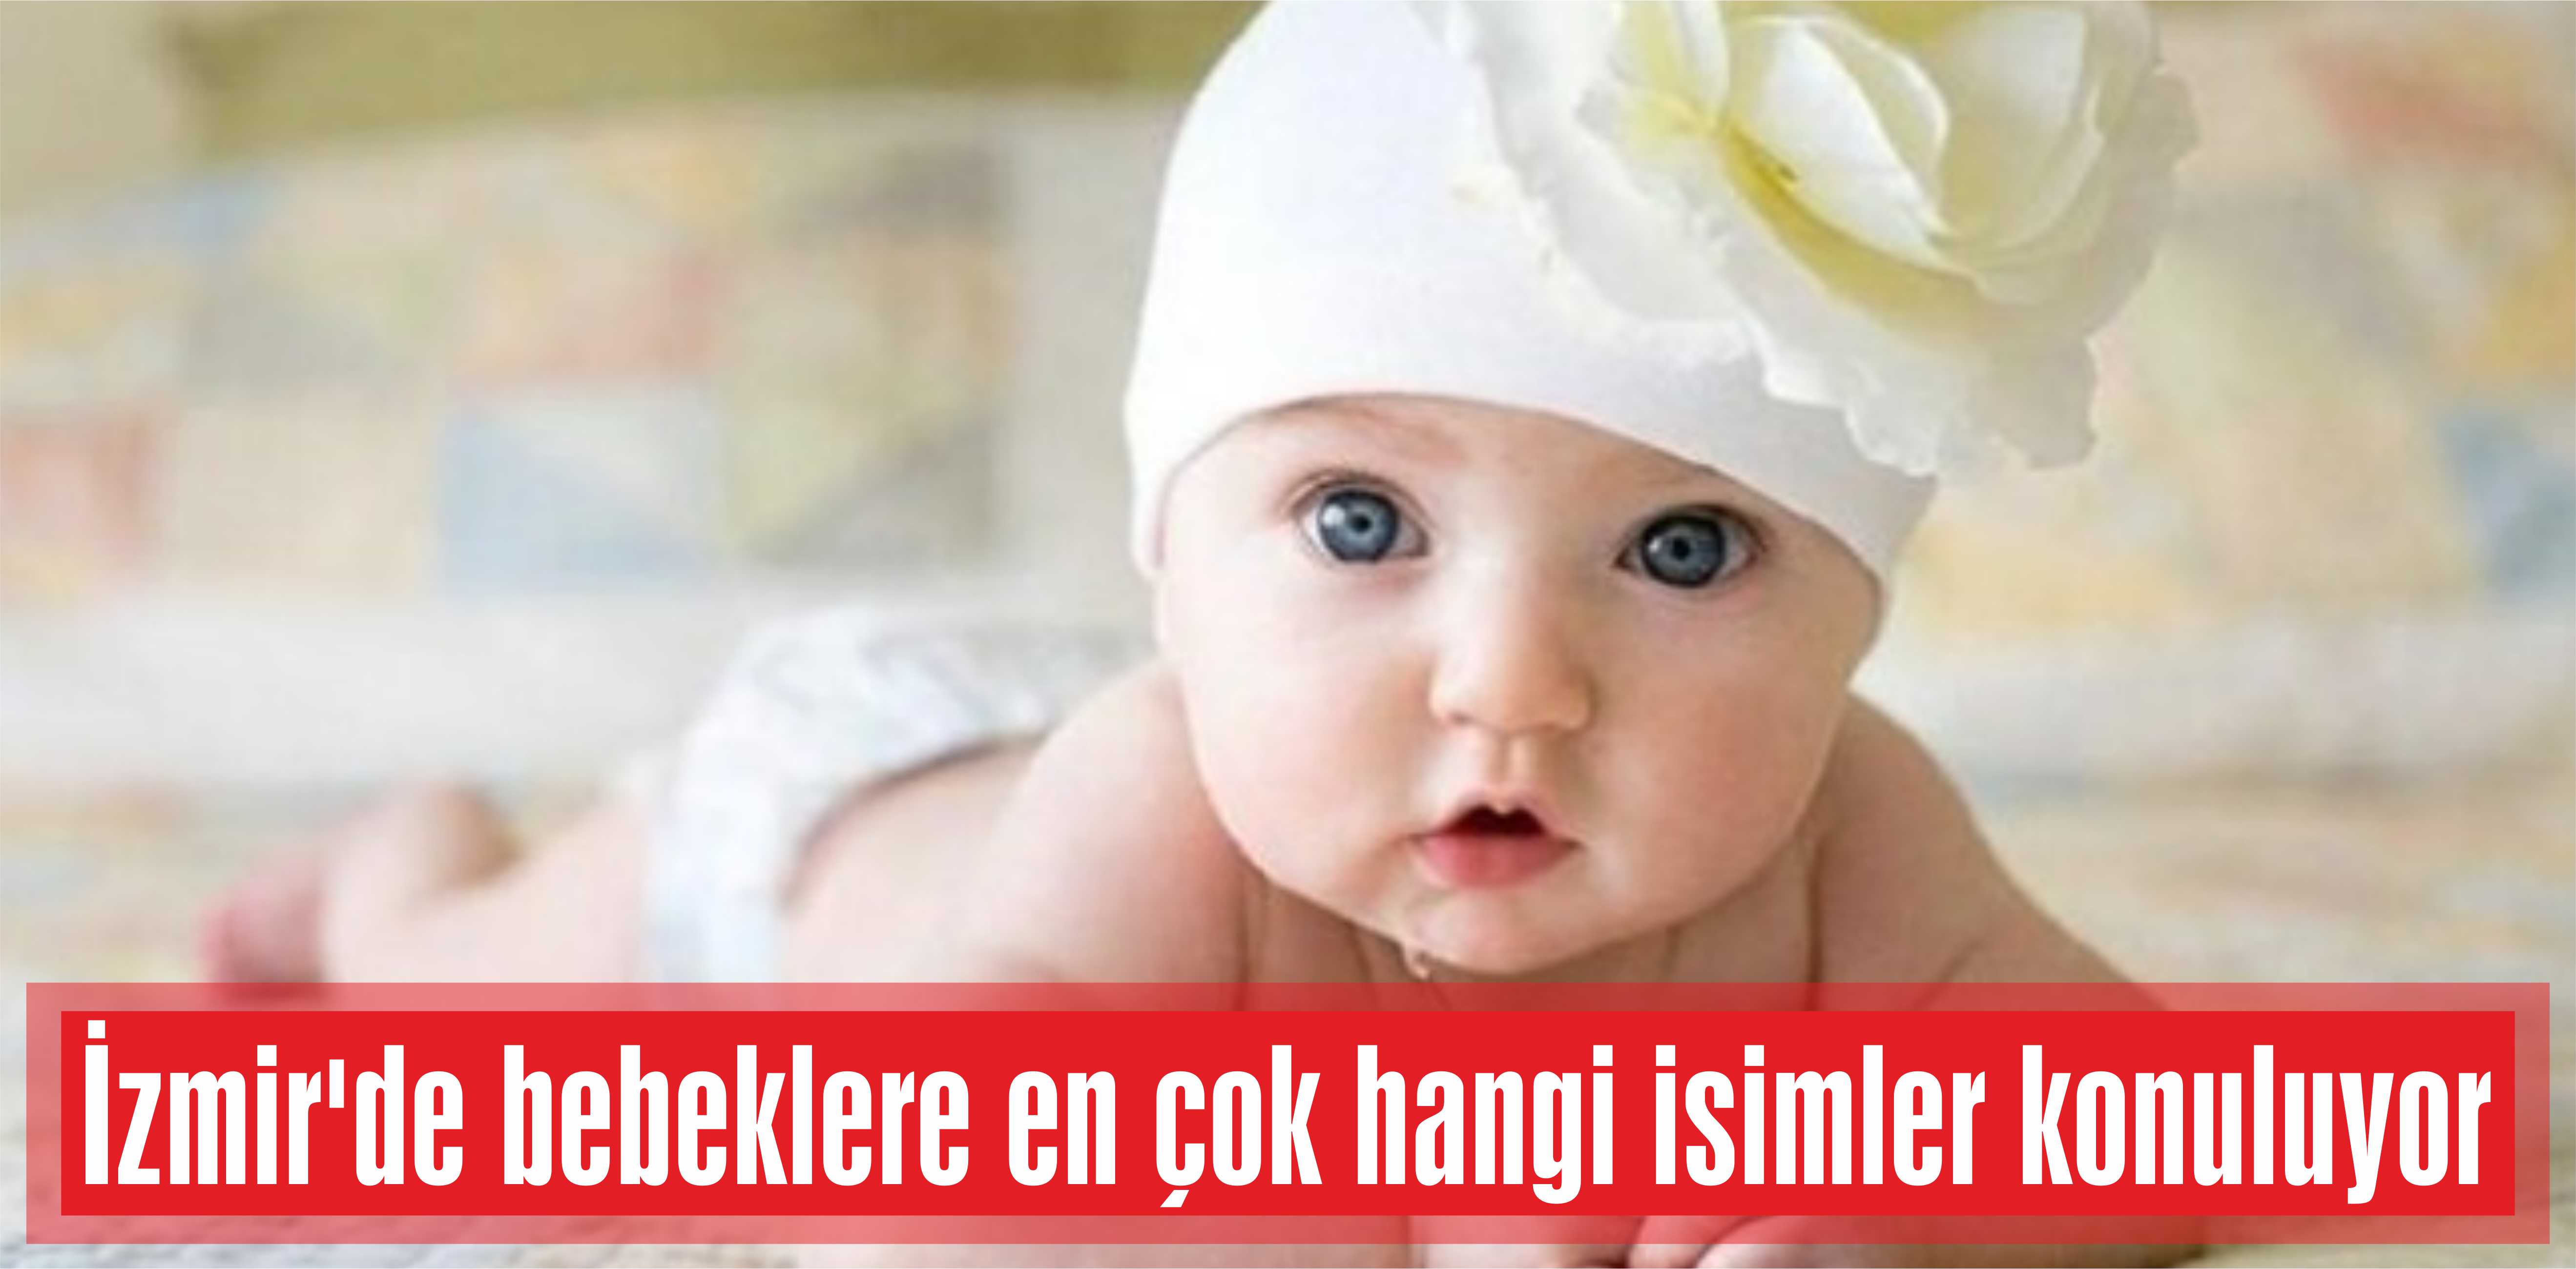 İzmir’de bebeklere en çok hangi isimler konuluyor